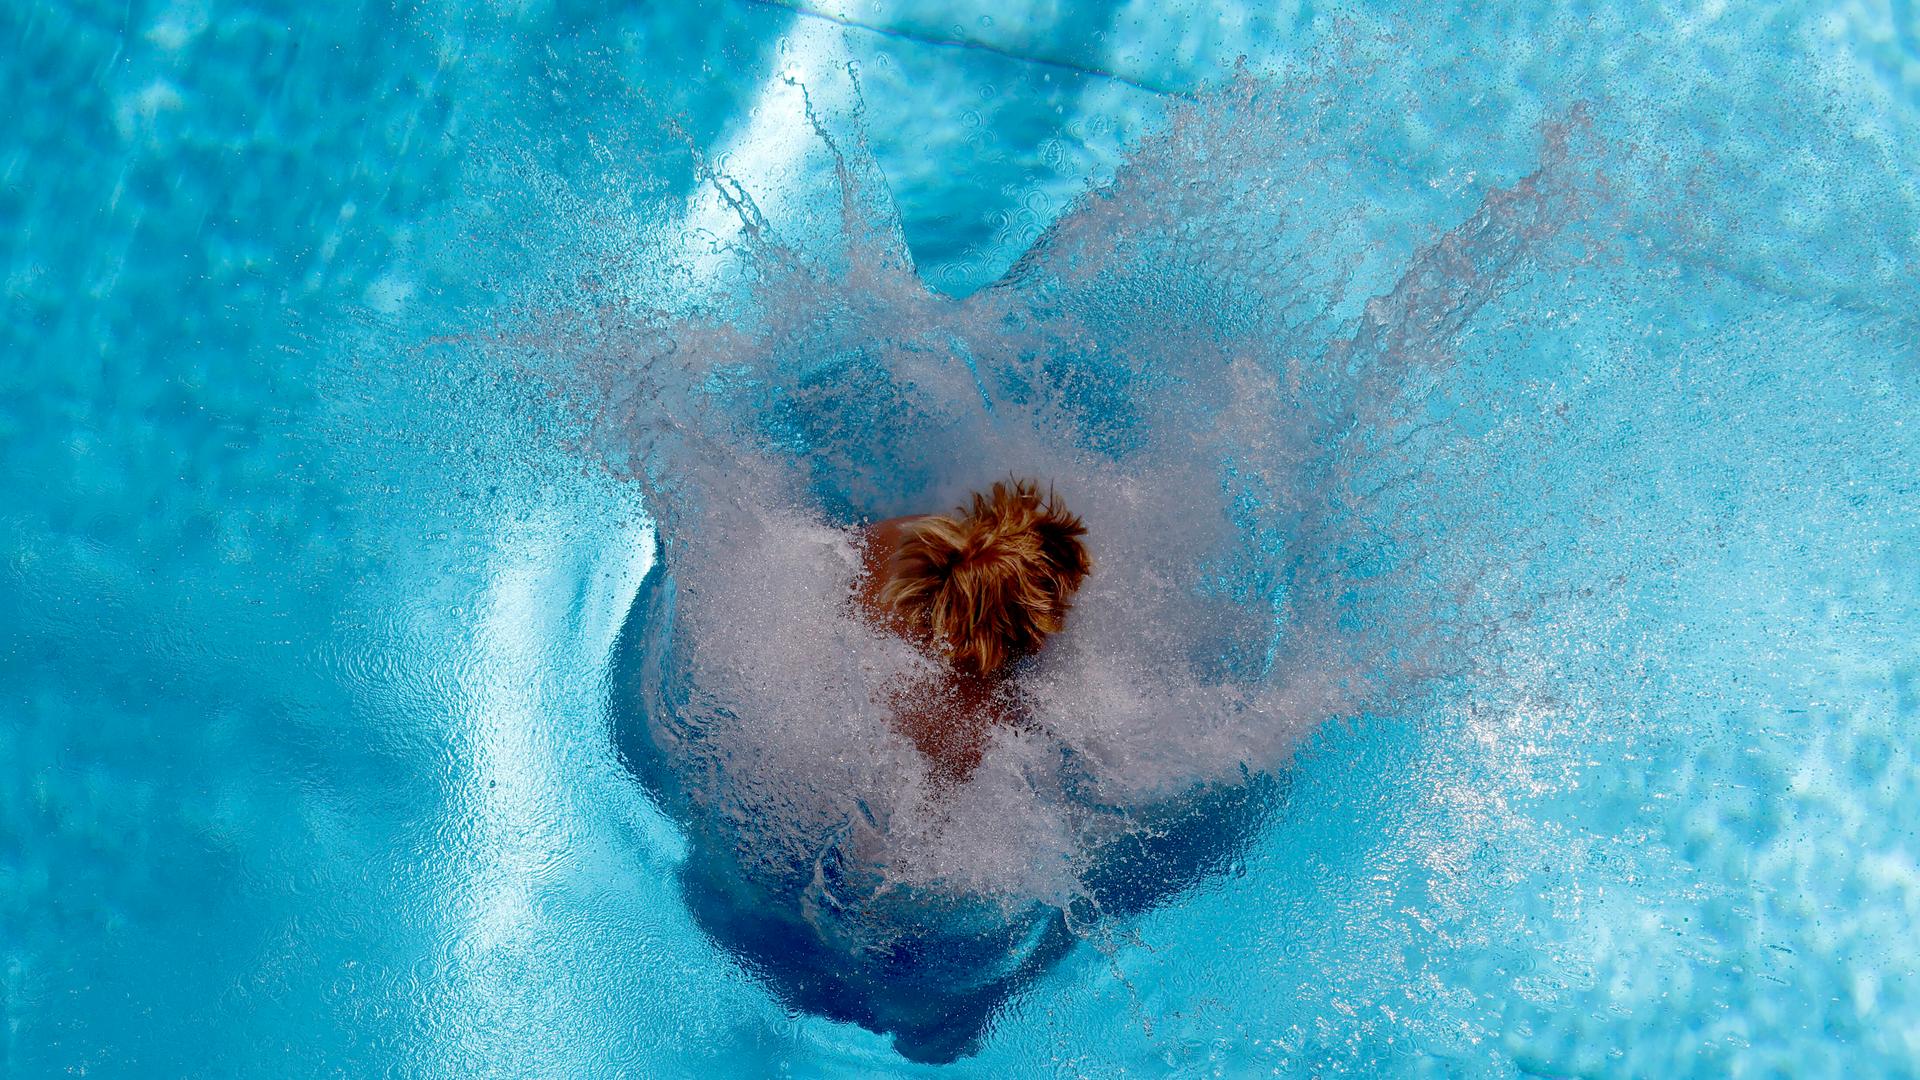 Vogelperspektive auf eine Person, die im Freibad eine Arschbombe ins Becken macht. Wasser spritzt in alle Richtungen.